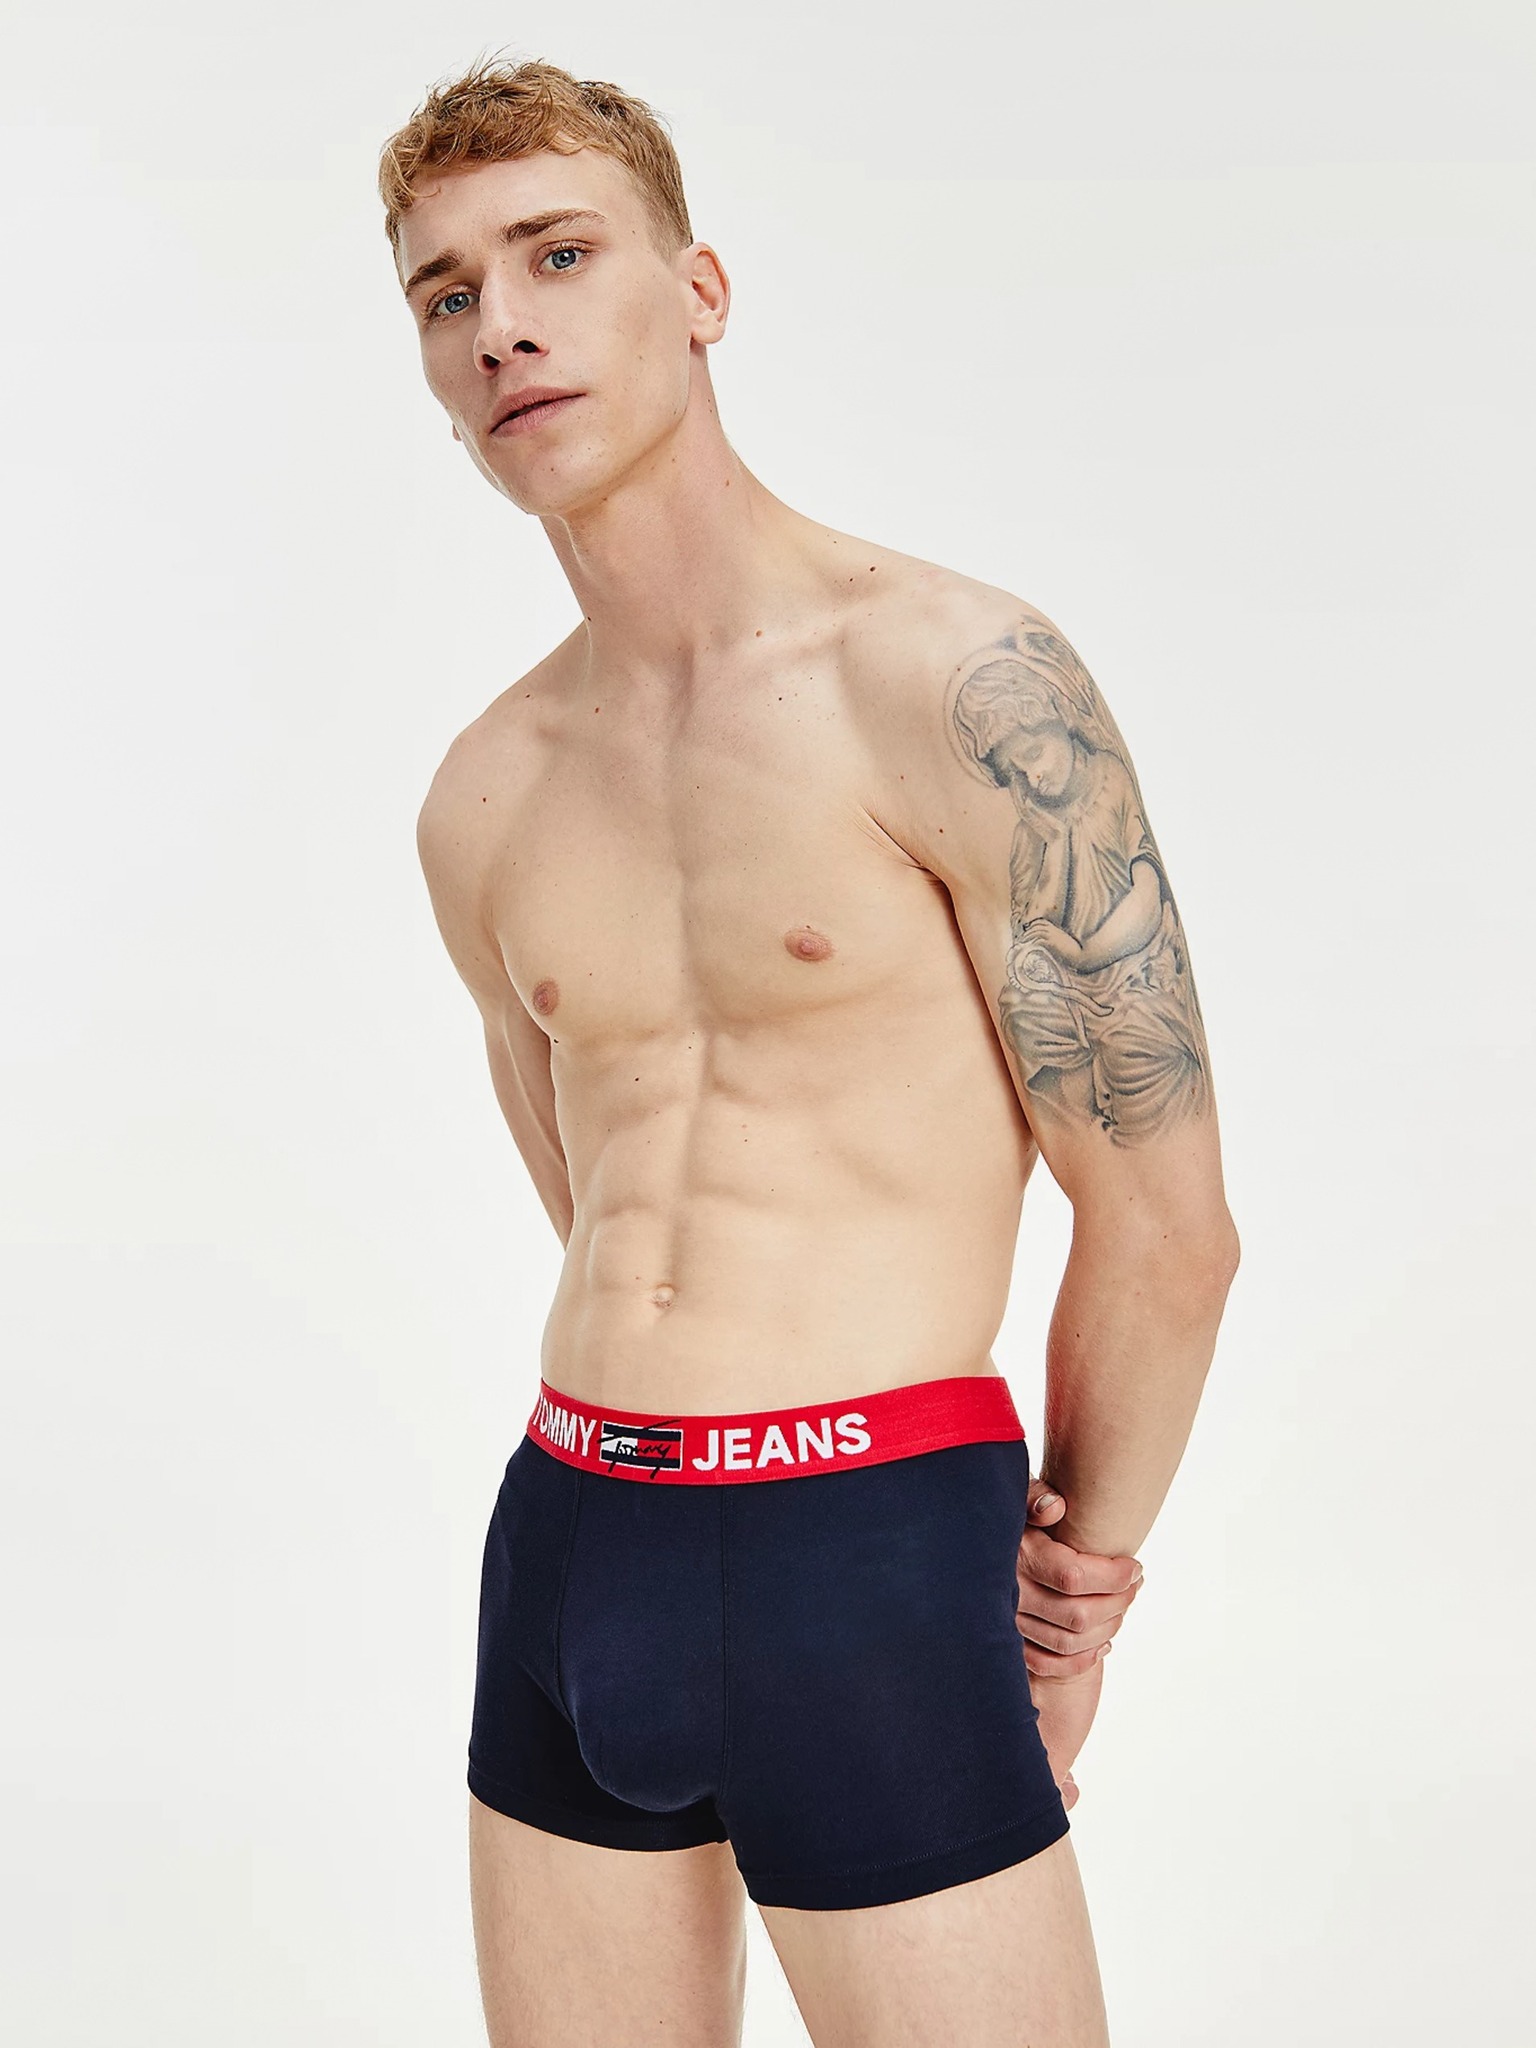 Tommy Hilfiger Underwear - Boxer shorts